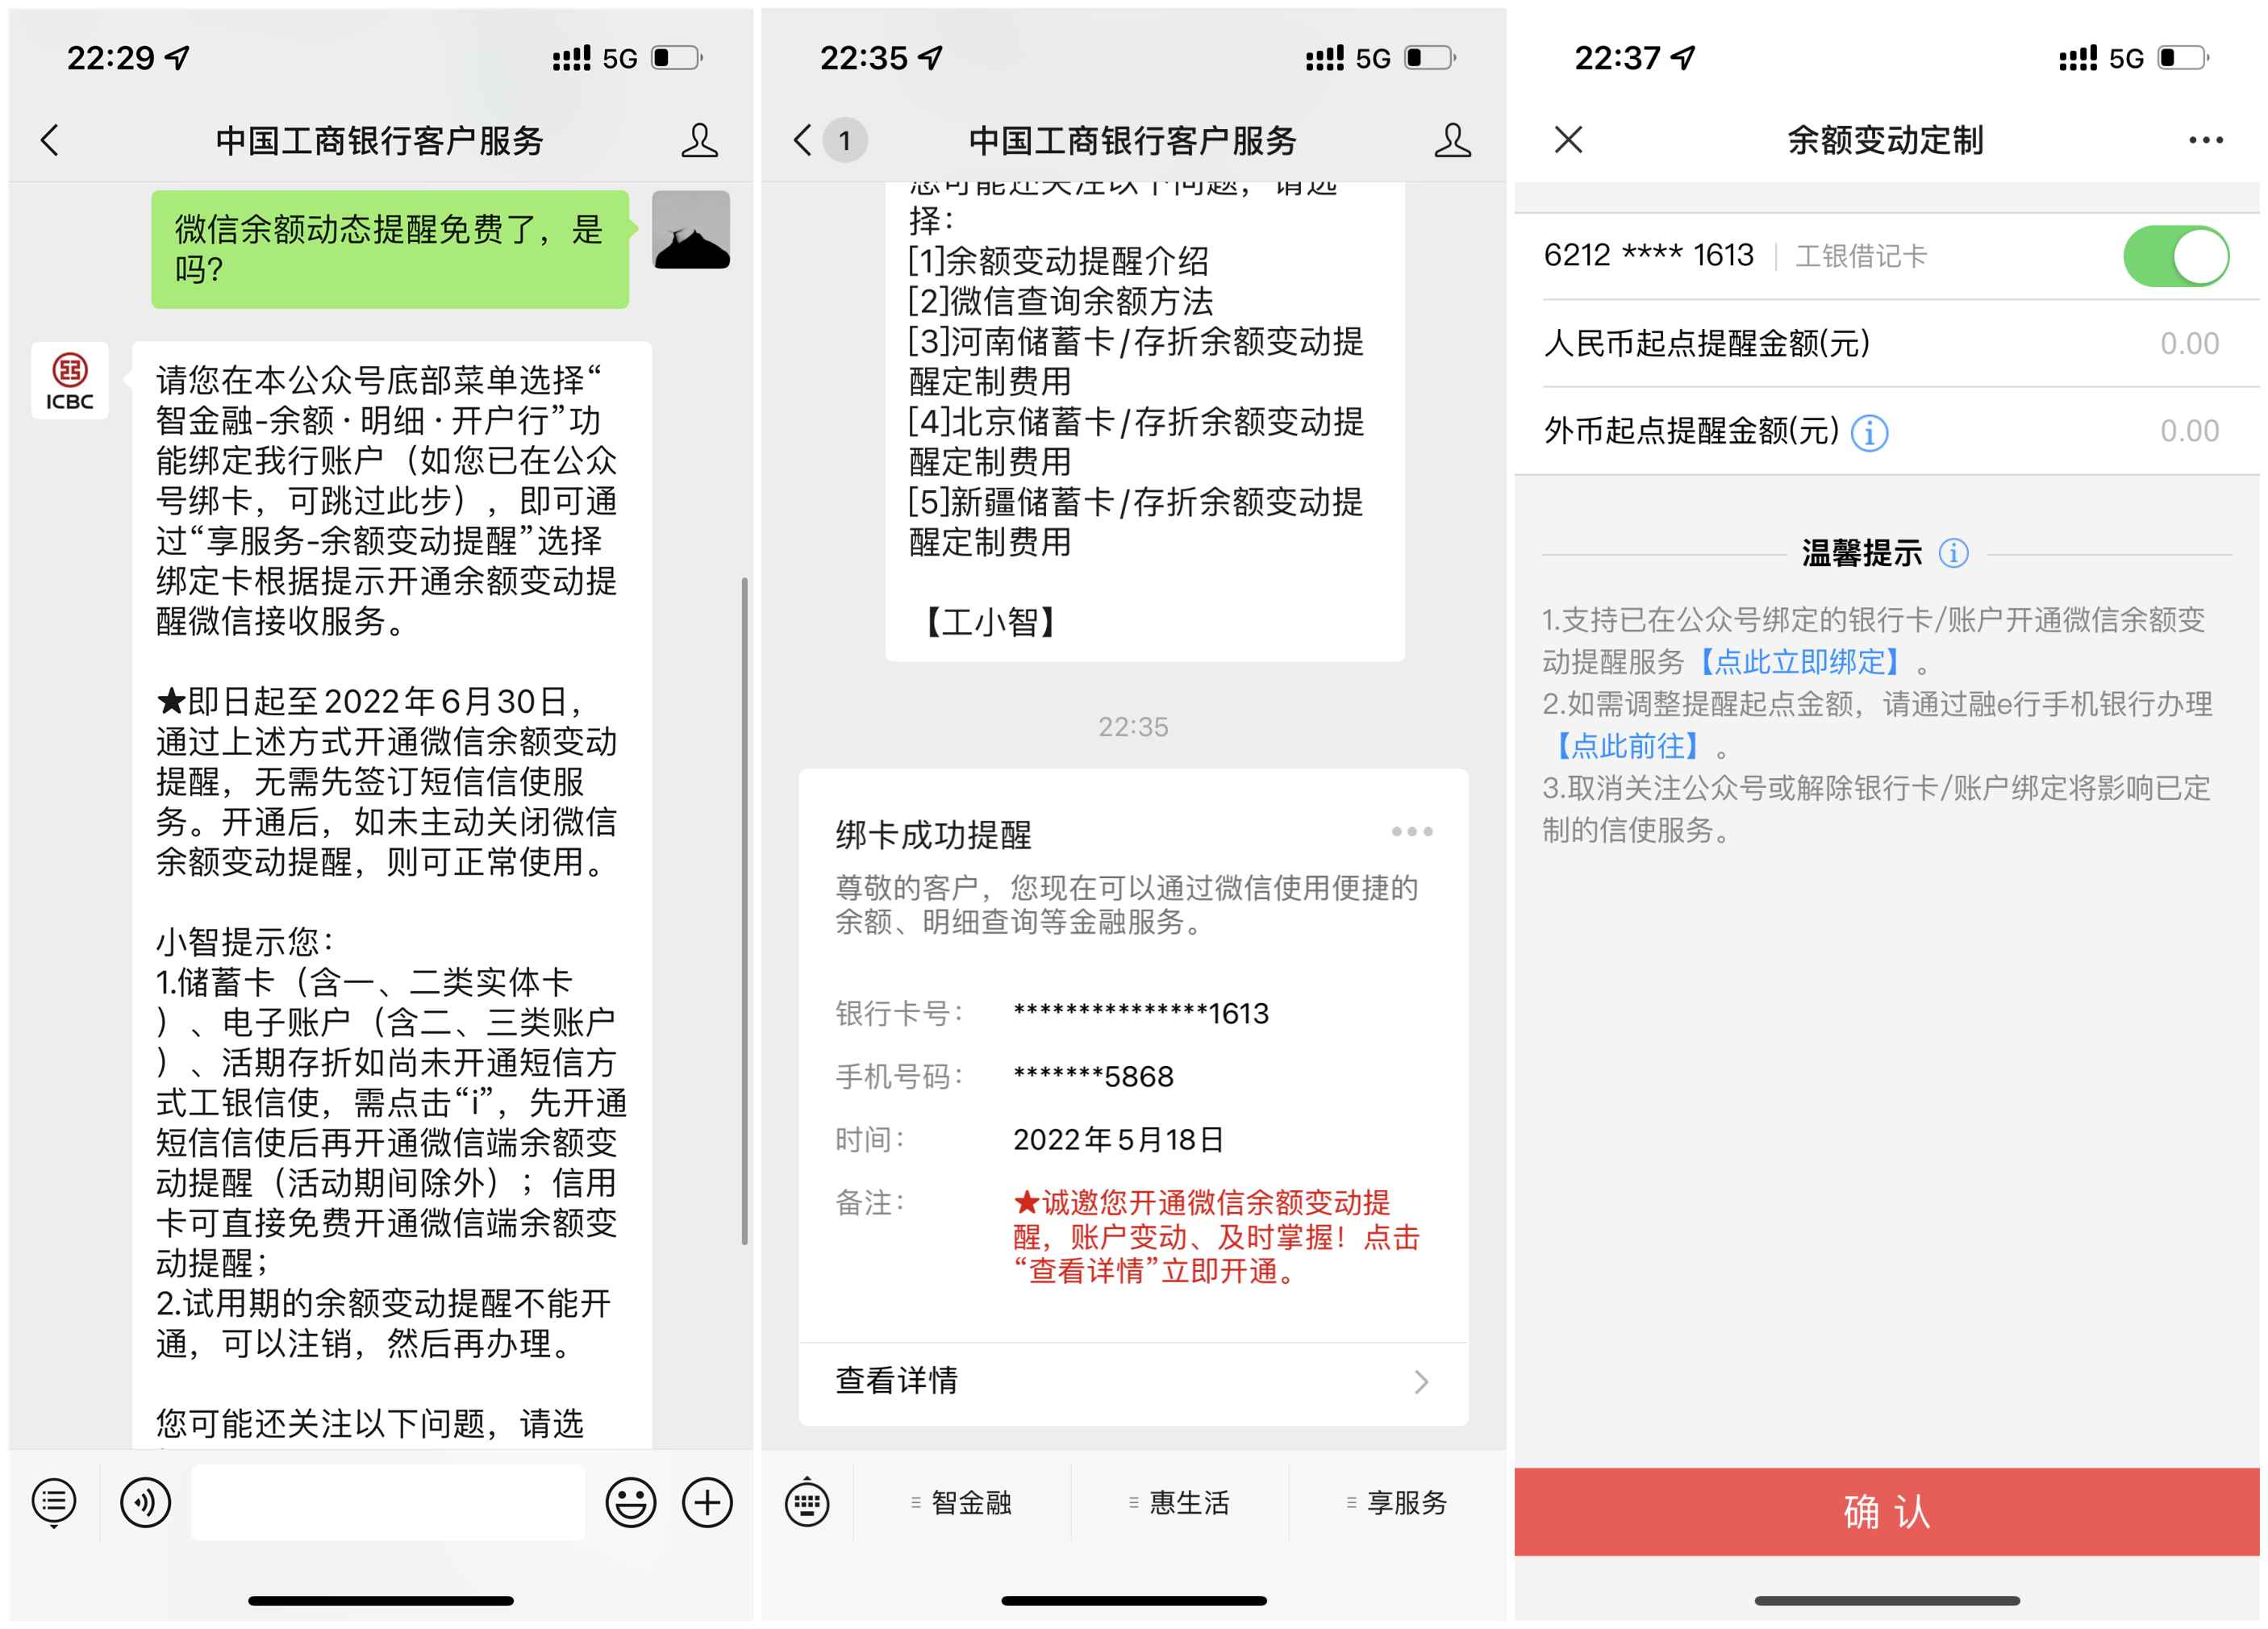 中国工商银行免费开通微信余额变动提醒